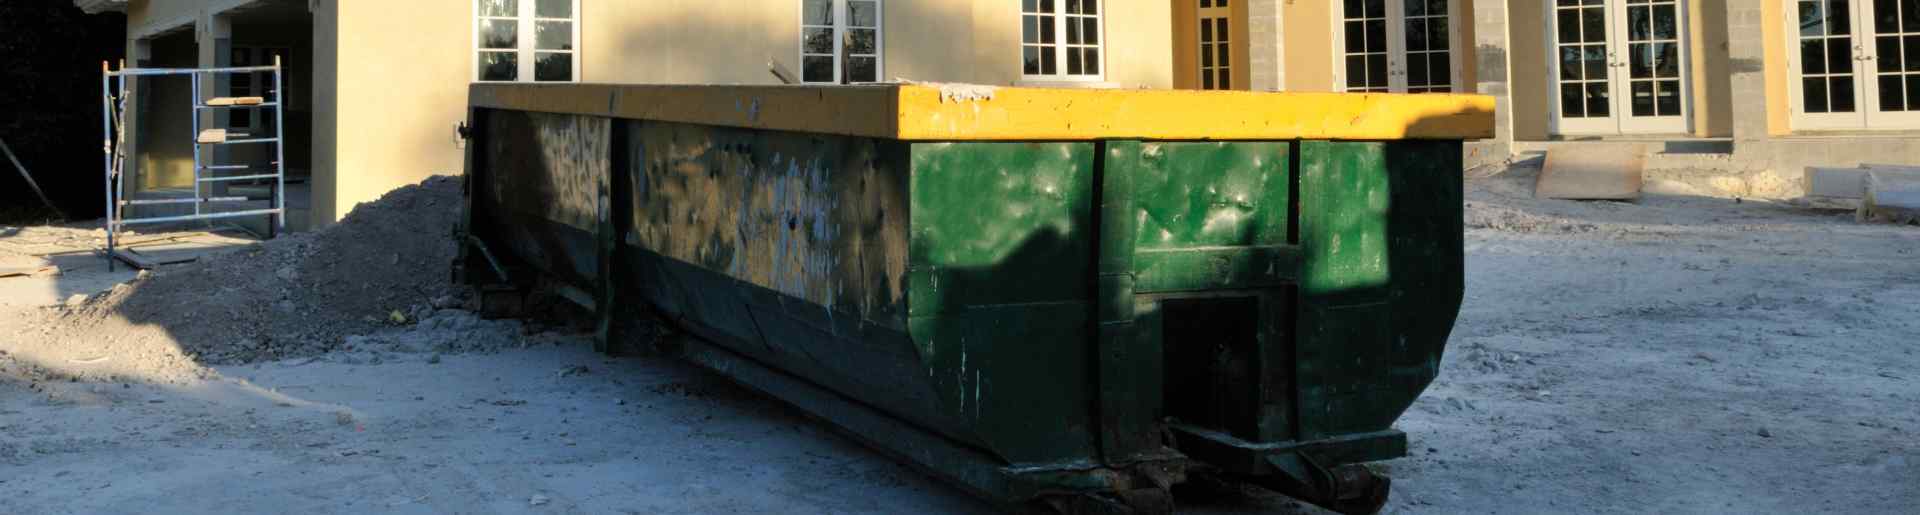 Green Dumpster Rentals